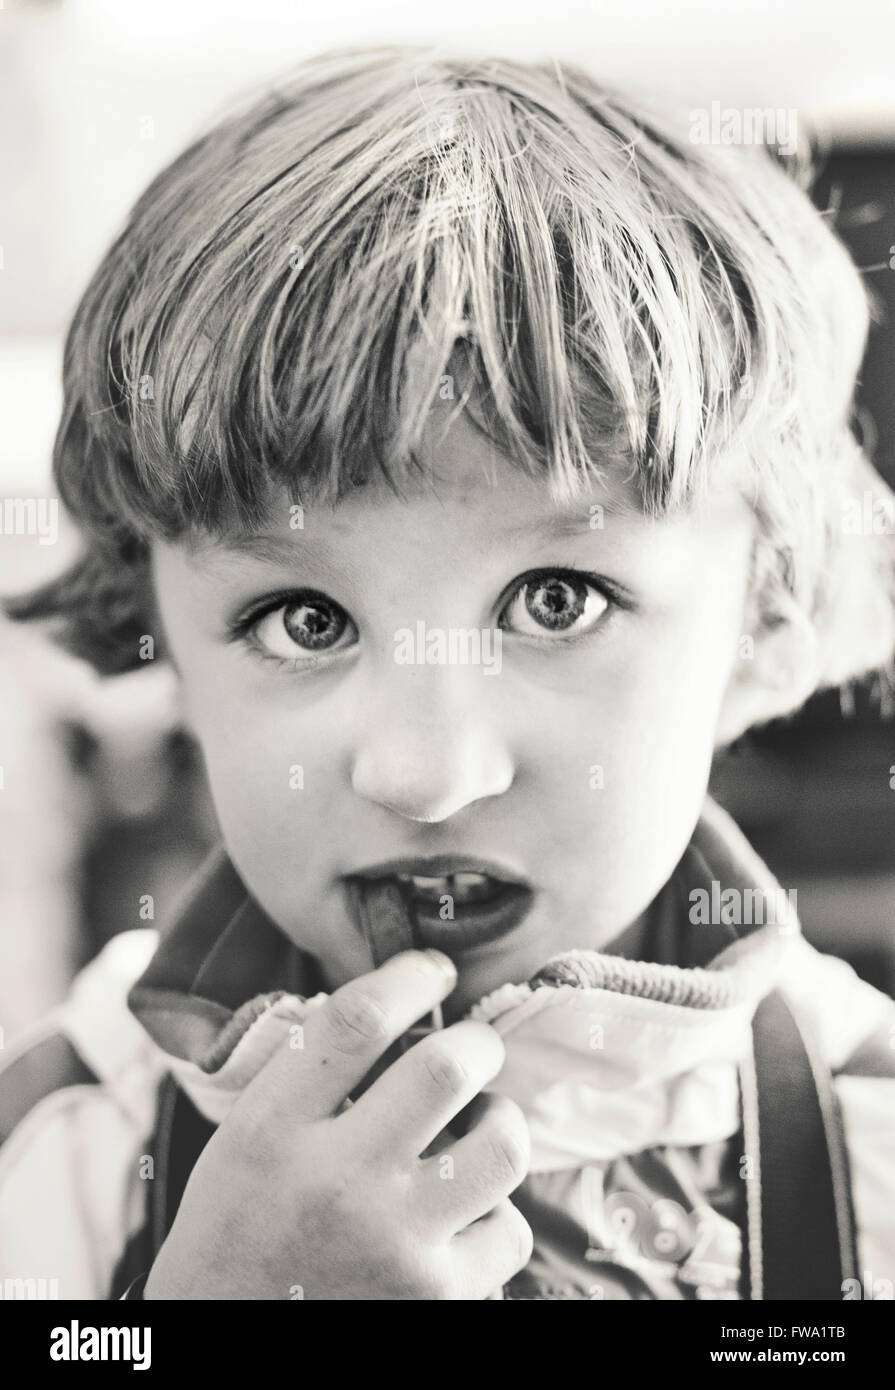 Porträt des kleinen Jungen Essen, Blick in die Kamera Stockfoto